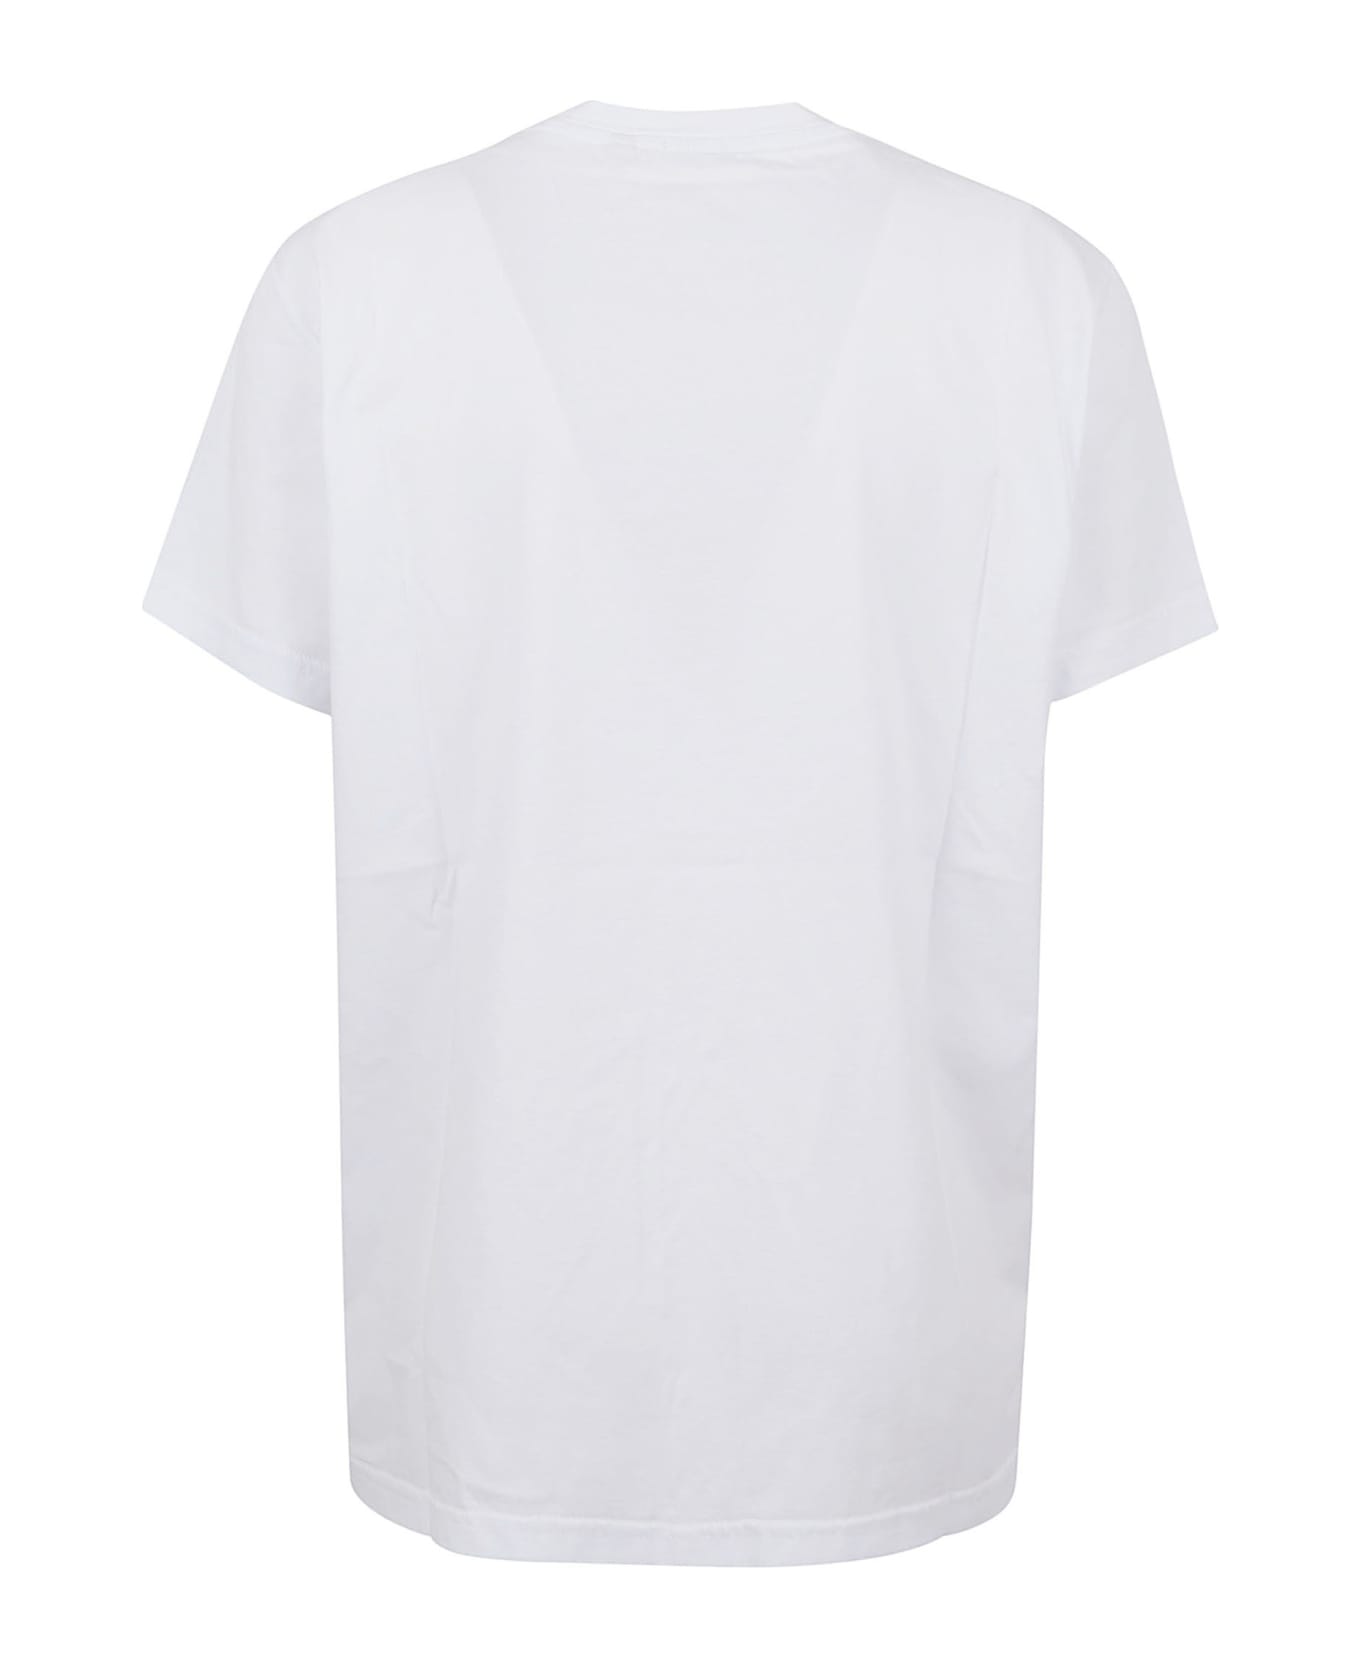 Aspesi T-shirt "ho Caldo" - White Tシャツ